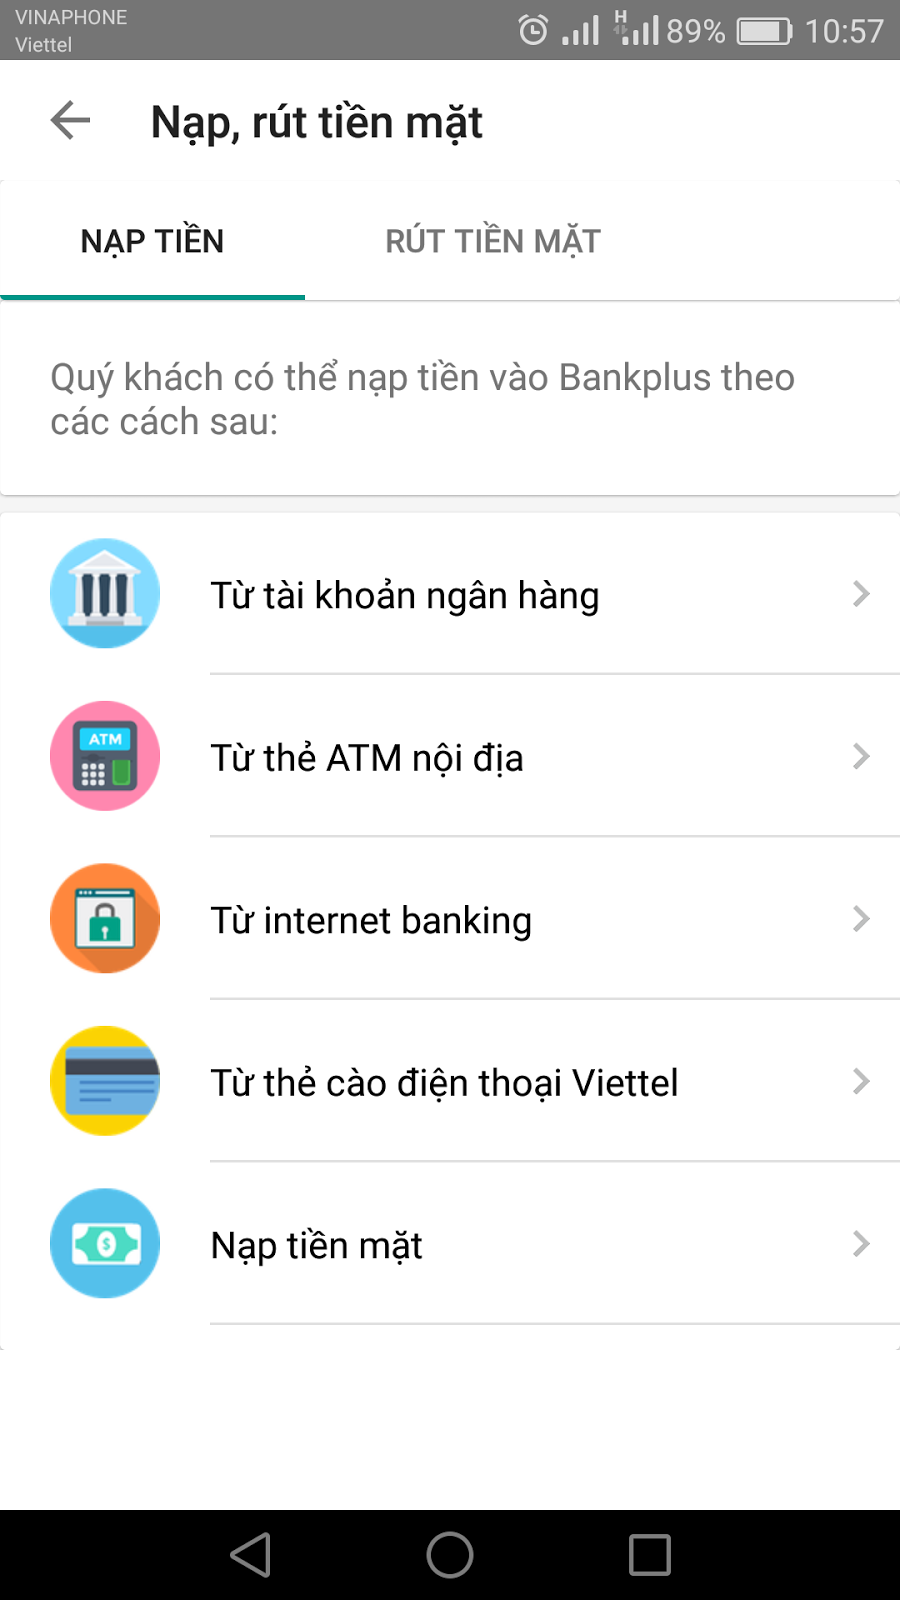 5 App đổi thẻ cào thành tiền mặt được sử dụng nhiều nhất